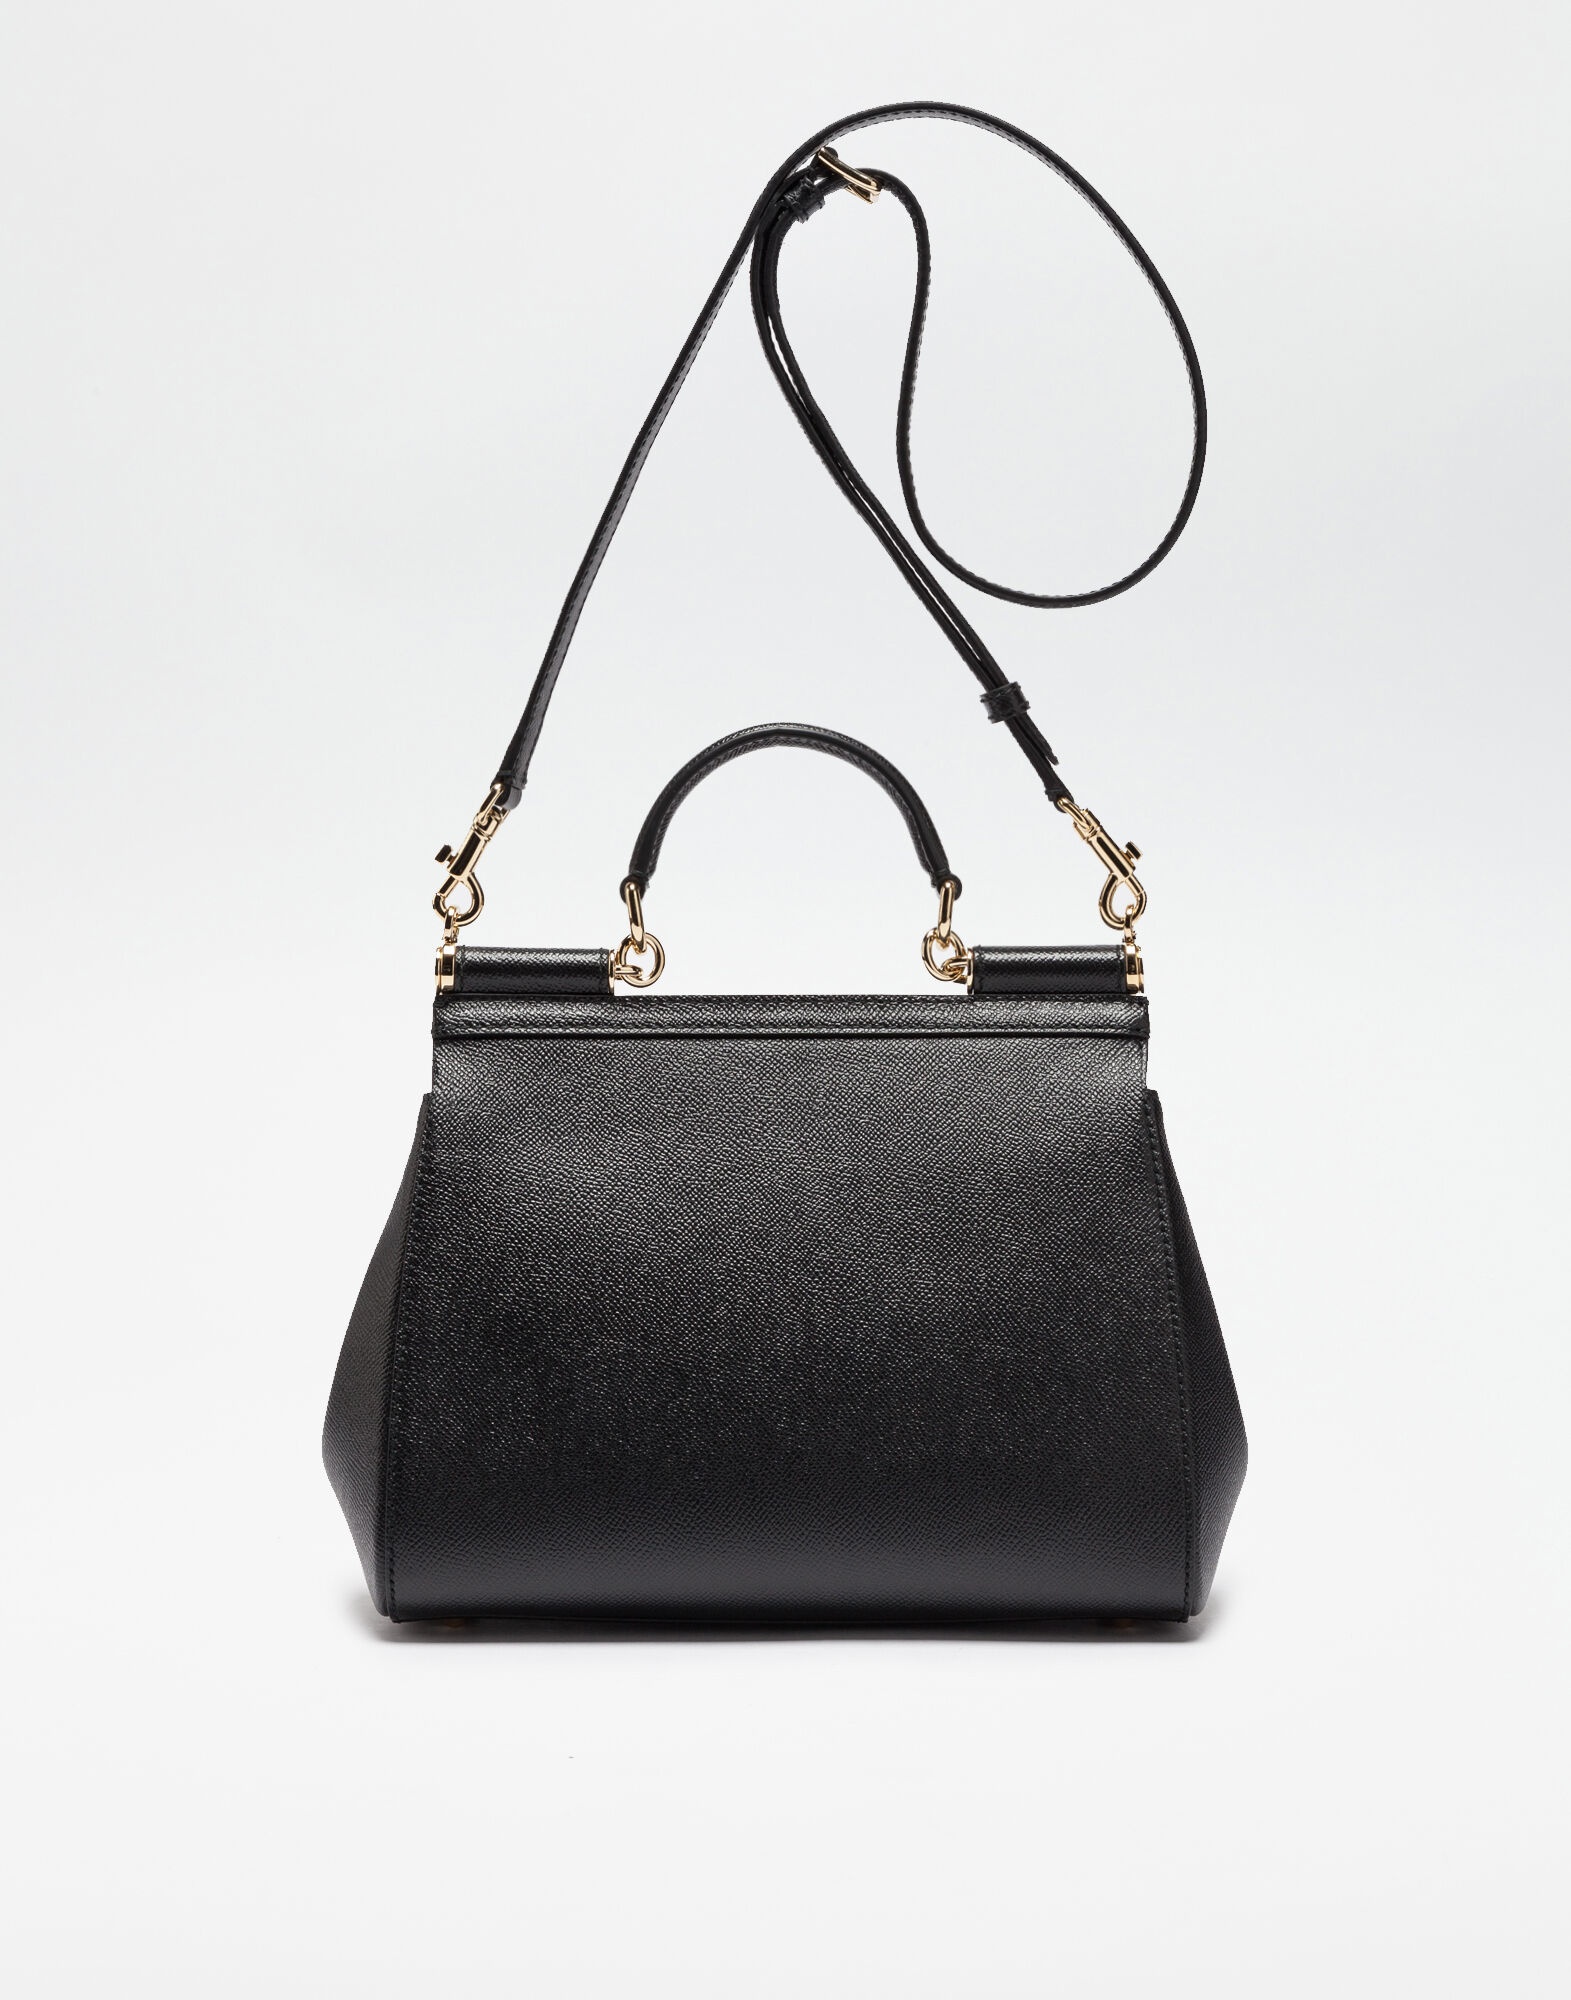 Medium Sicily handbag in dauphine leather - 3